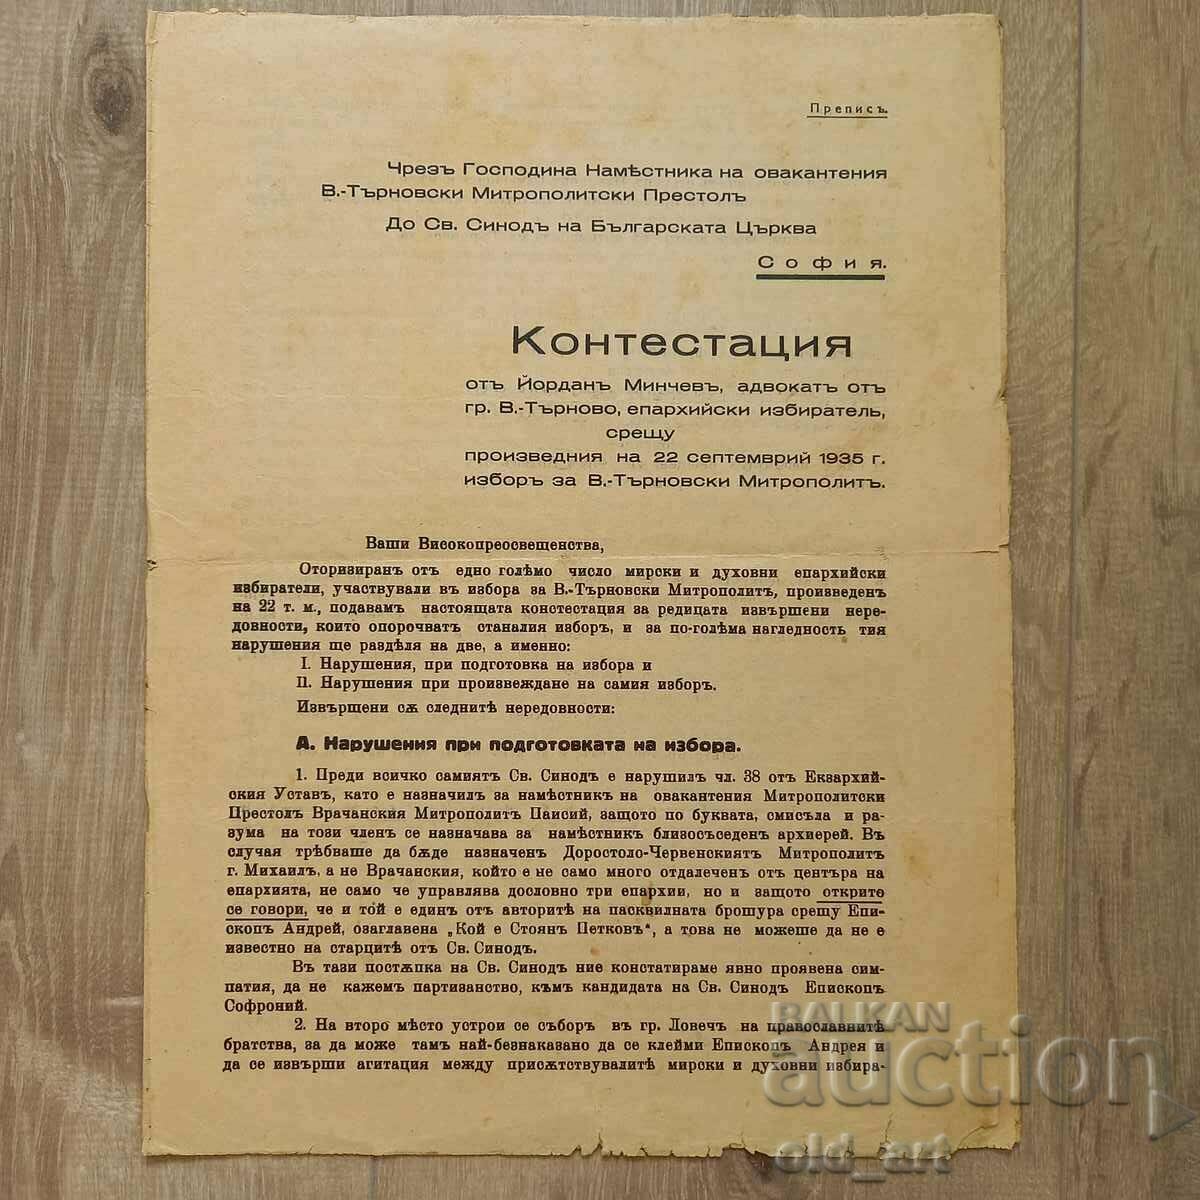 Контестация с/у избора на В.Търновския митрополит, 1935